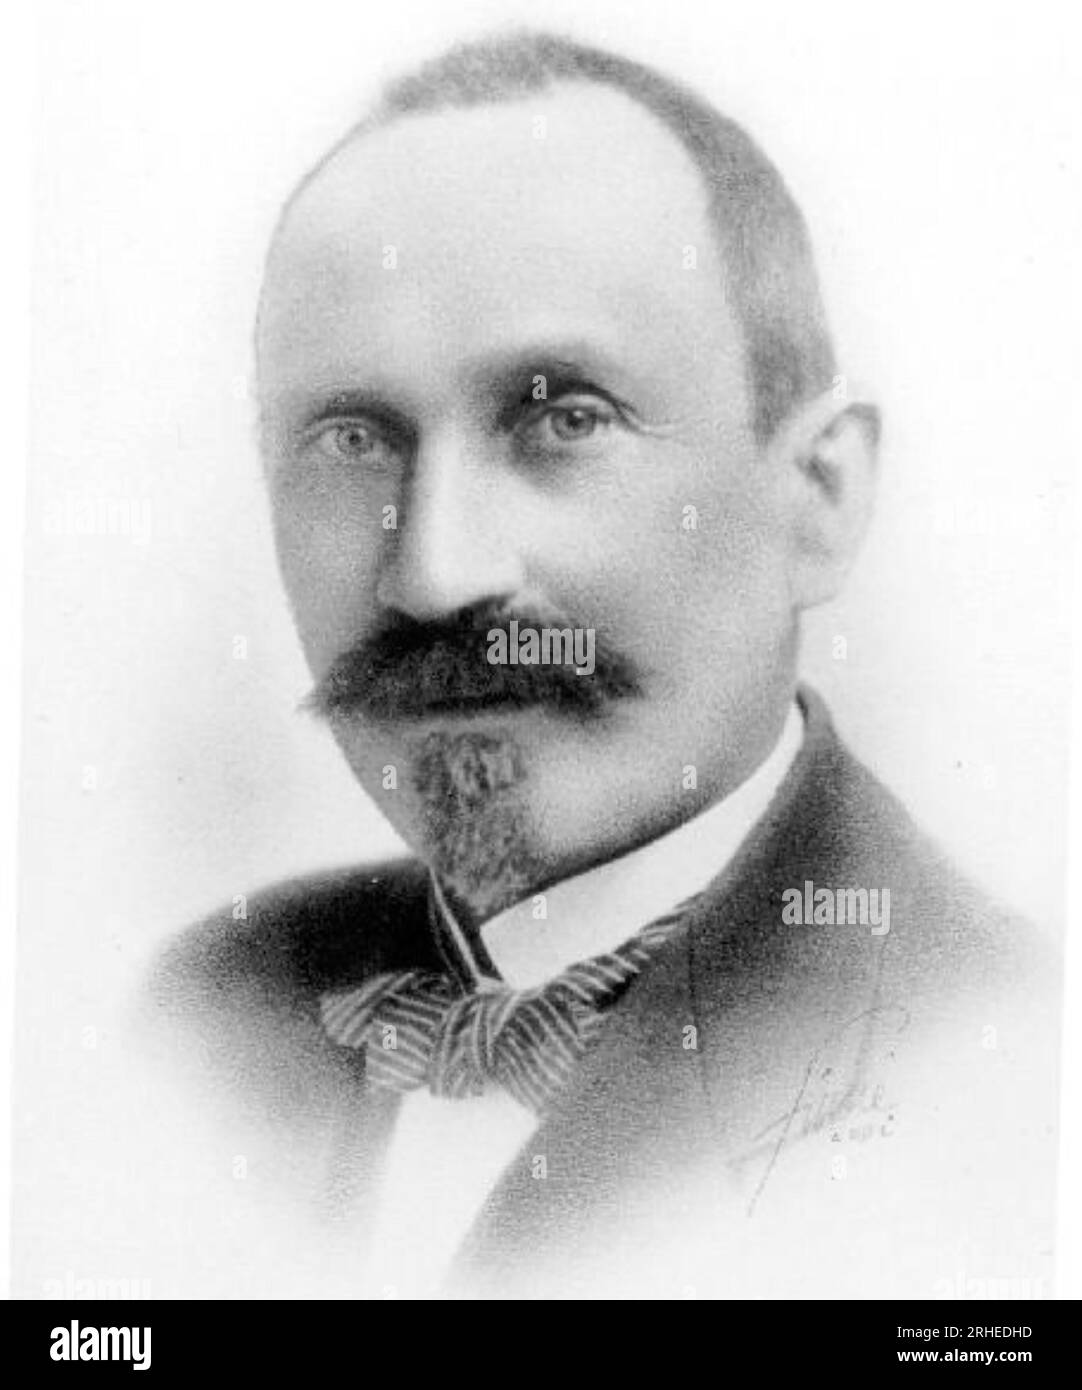 AEGIDIUS ELLING (1861-1949) inventore norvegese e pioniere delle turbine a gas Foto Stock